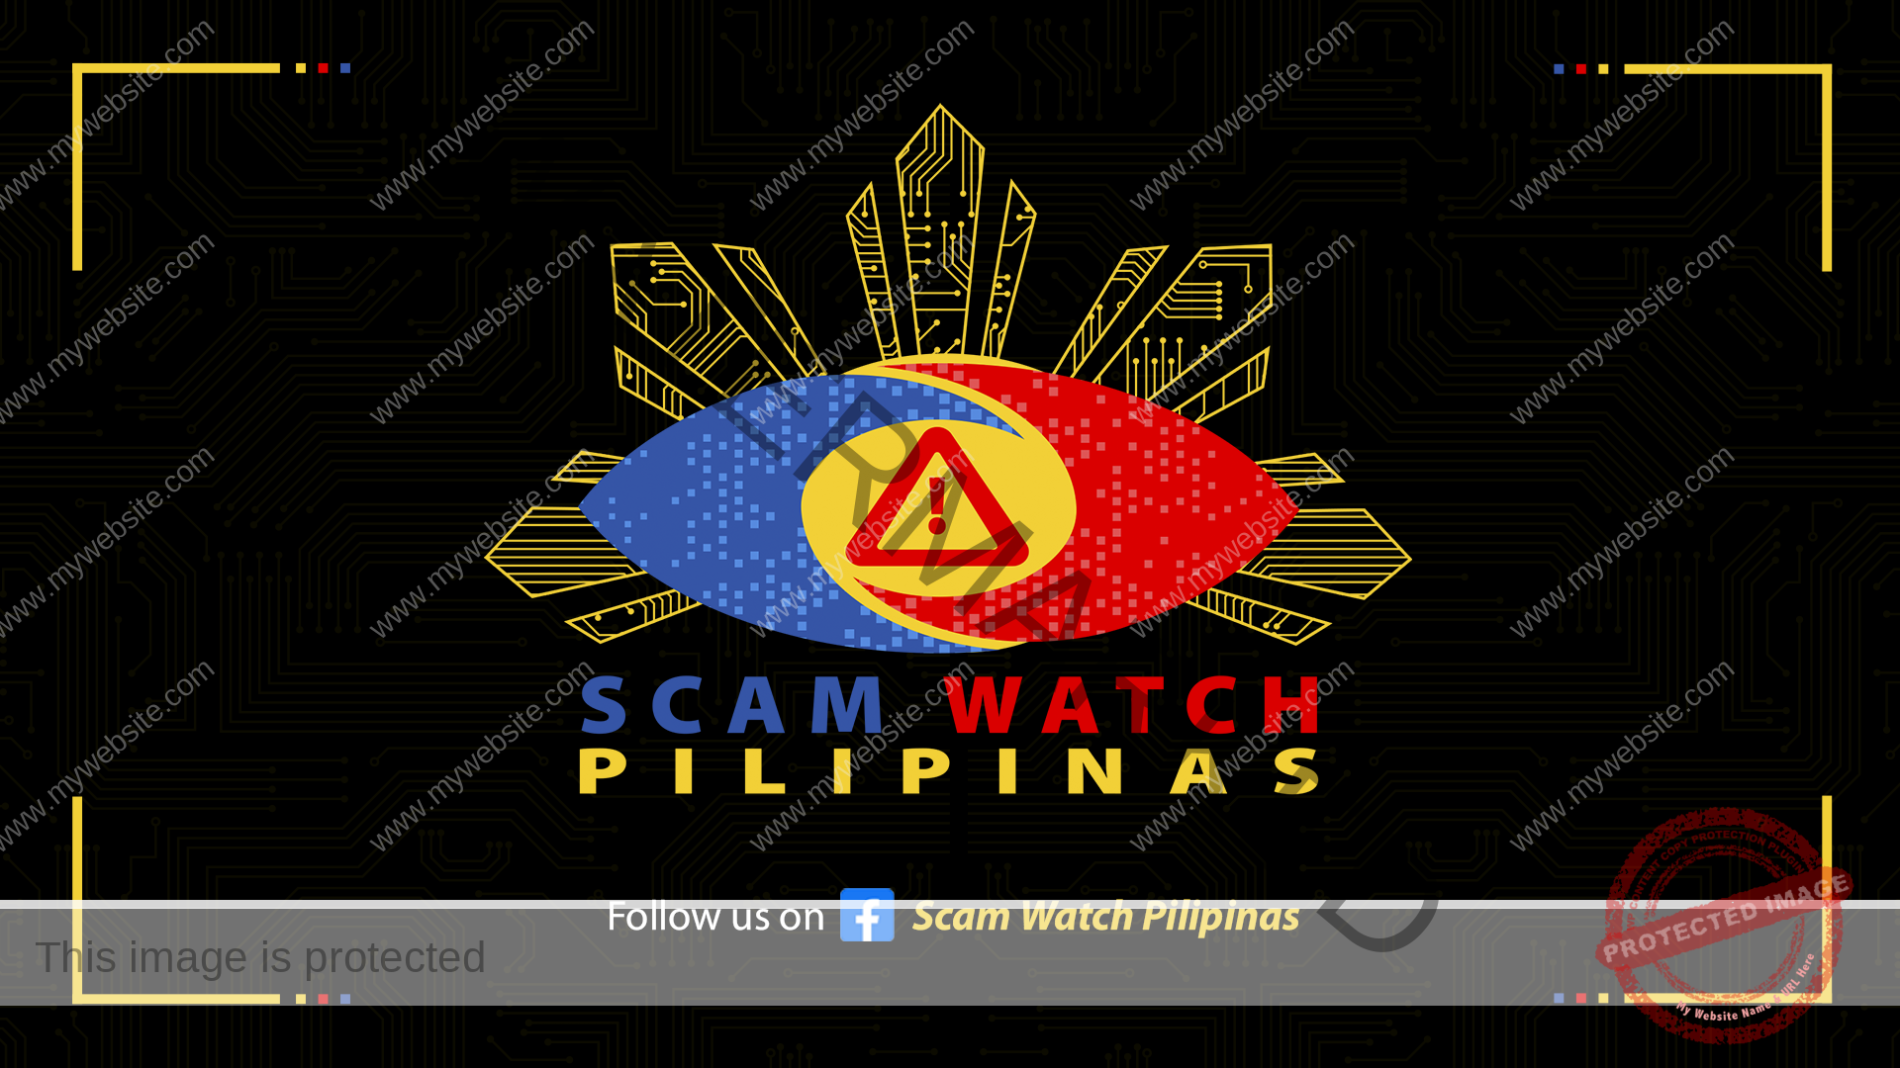 Background of Scam Watch Pilipinas 2023